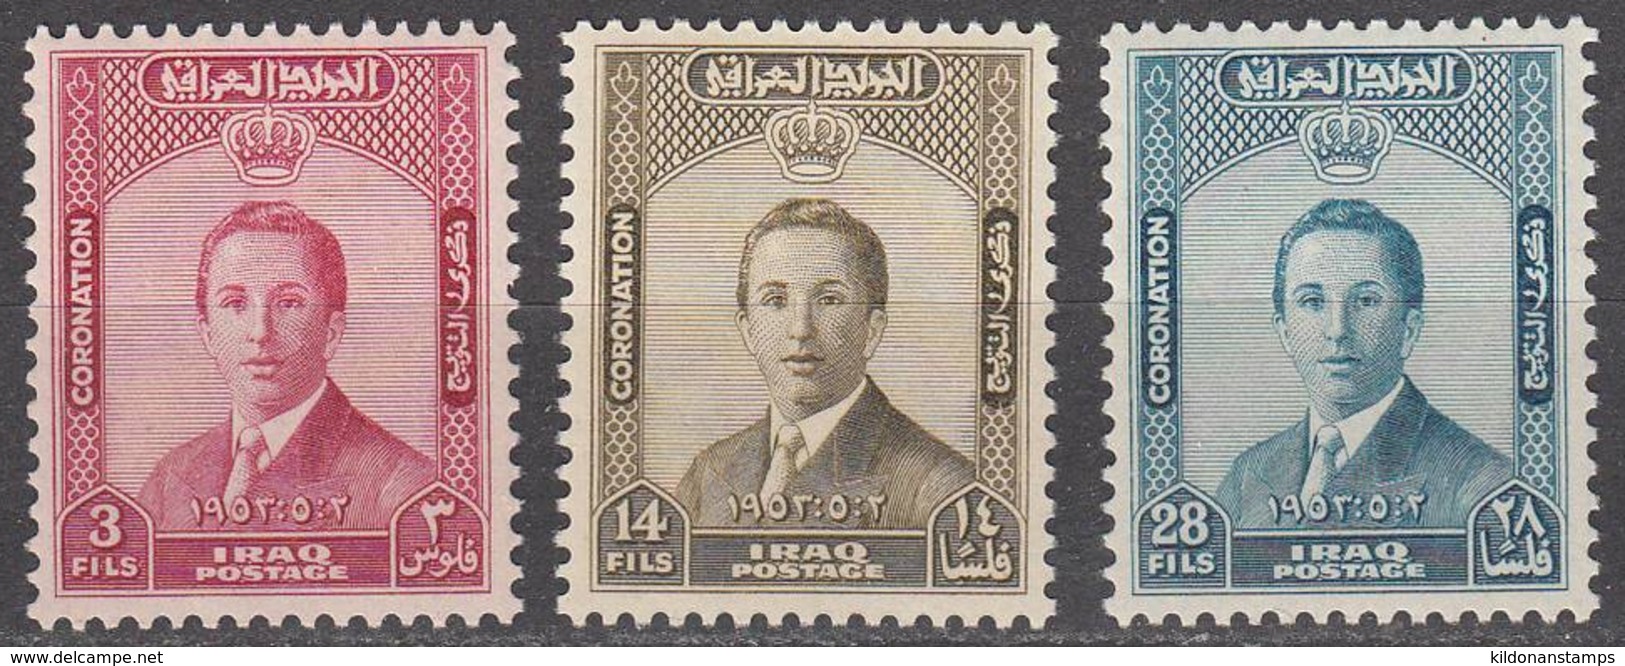 Iraq 1953 Full Set, Mint Mounted, Sc# 139-141, SG 342-344 - Iraq